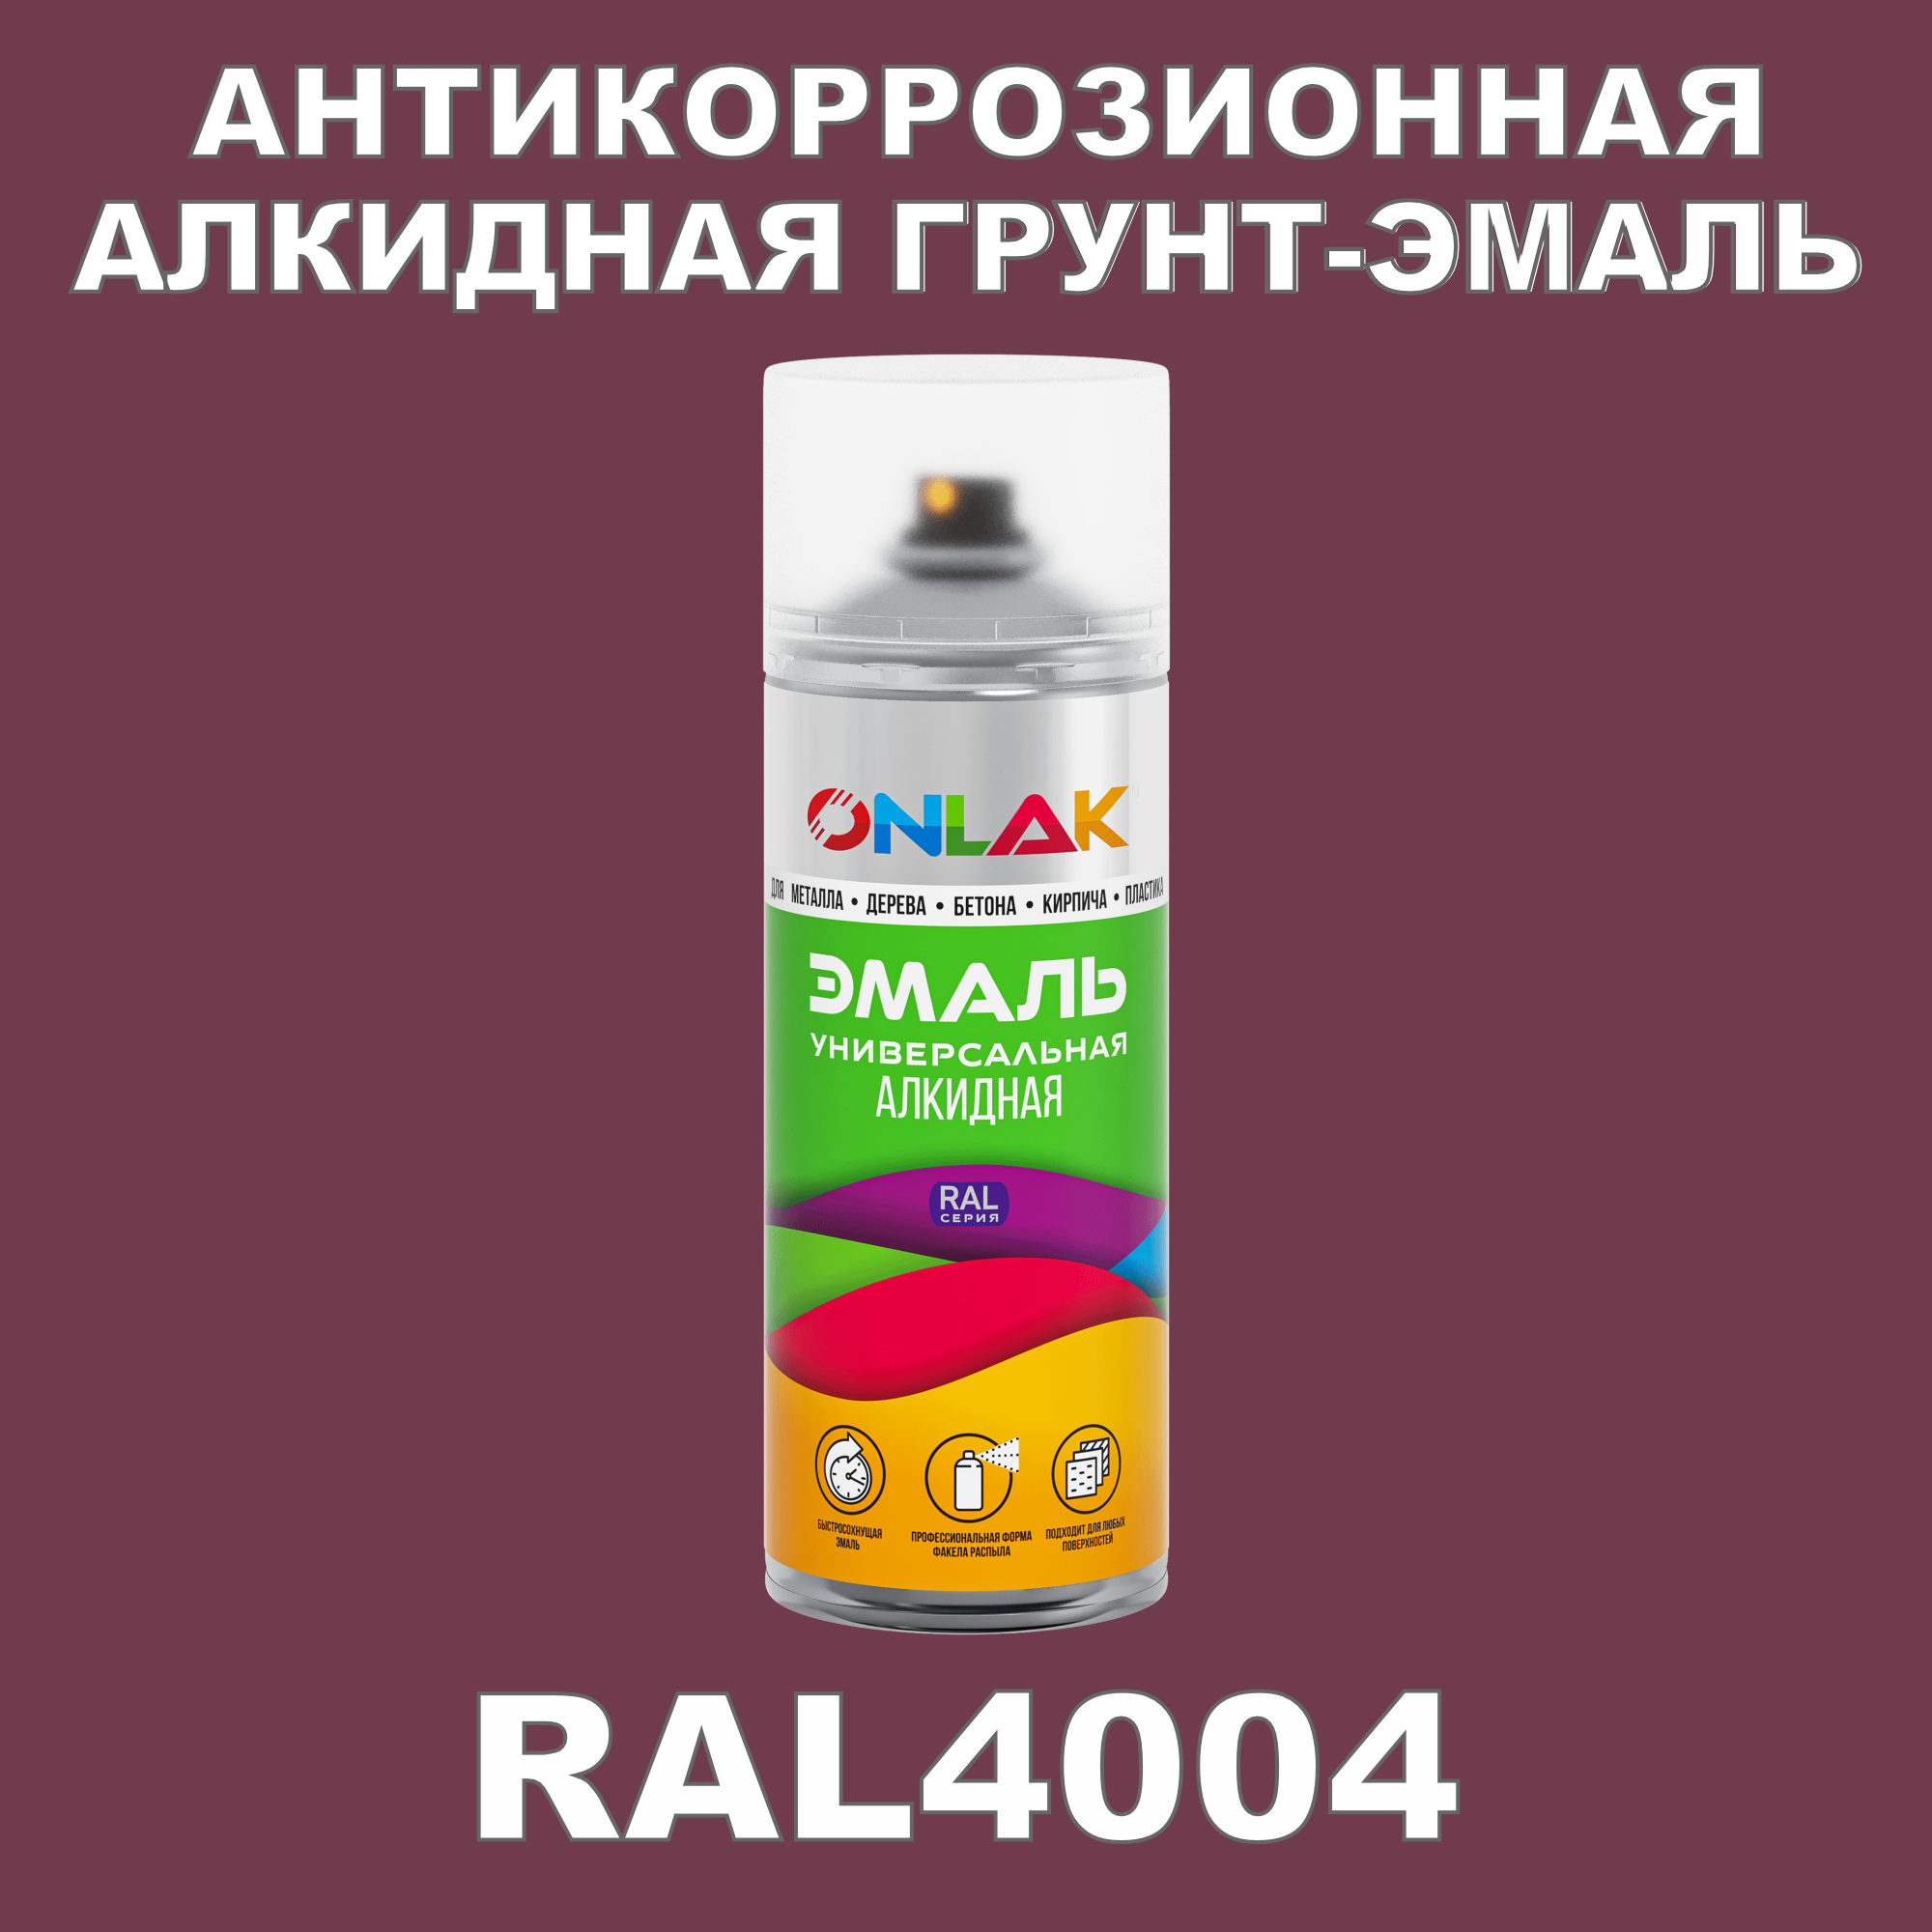 Антикоррозионная грунт-эмаль ONLAK RAL 4004,фиолетовый,657 мл рюкзак детский на молнии 3 наружных кармана цвет фиолетовый